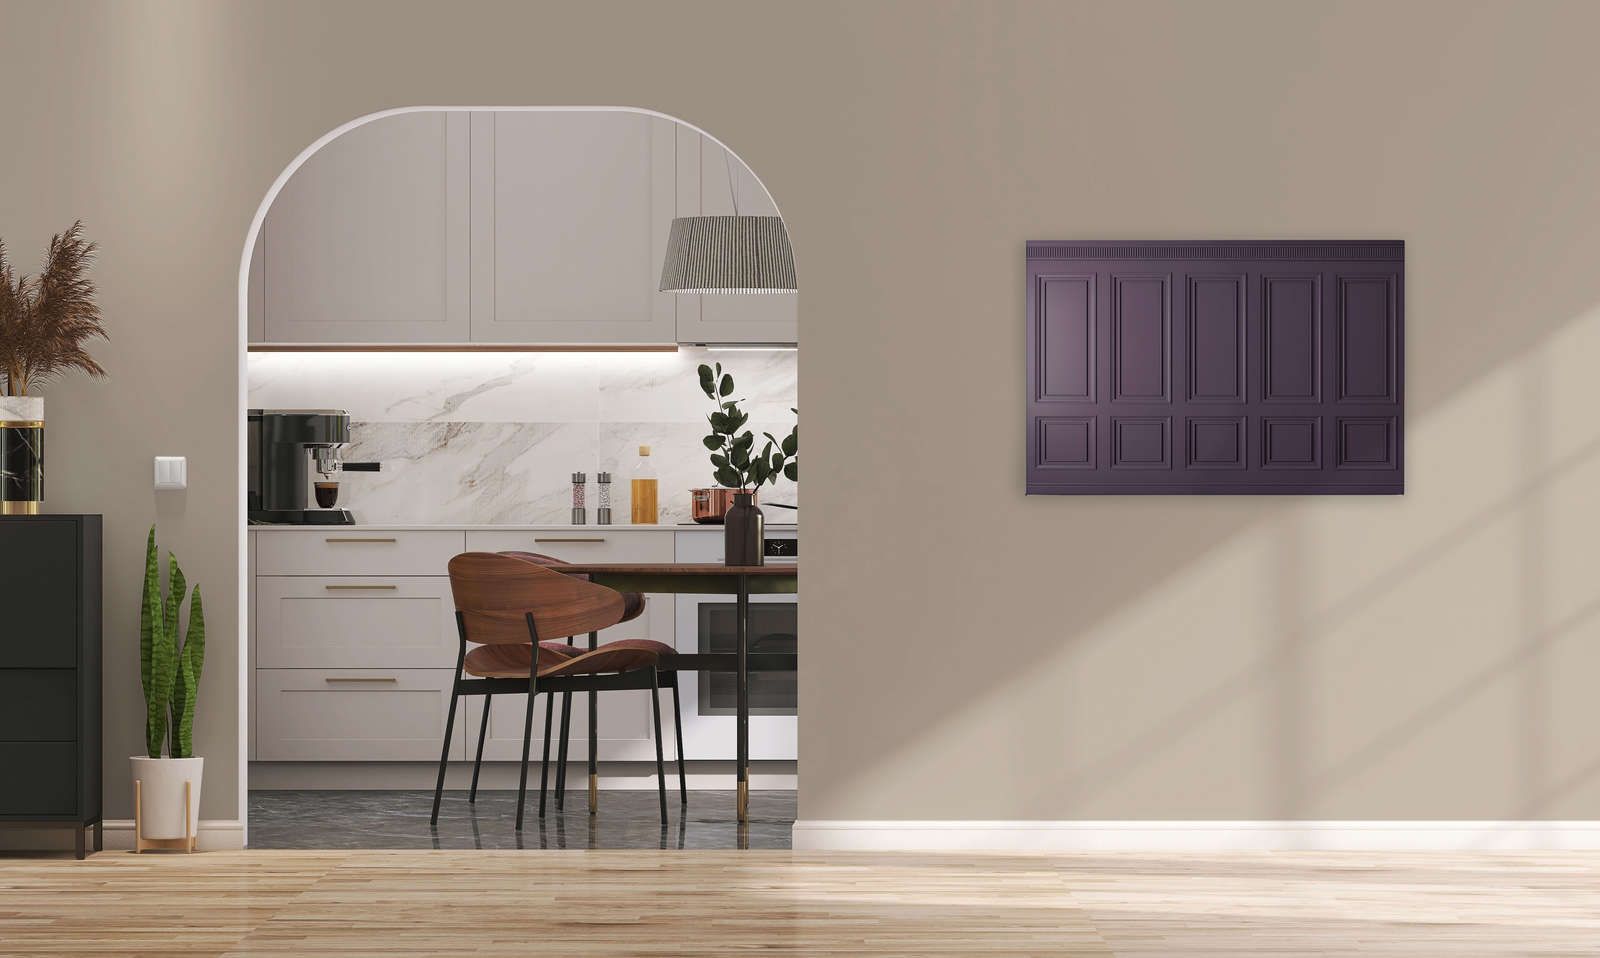             Kensington 3 - 3D Lienzo pintura paneles de madera púrpura oscuro, violeta - 0,90 m x 0,60 m
        